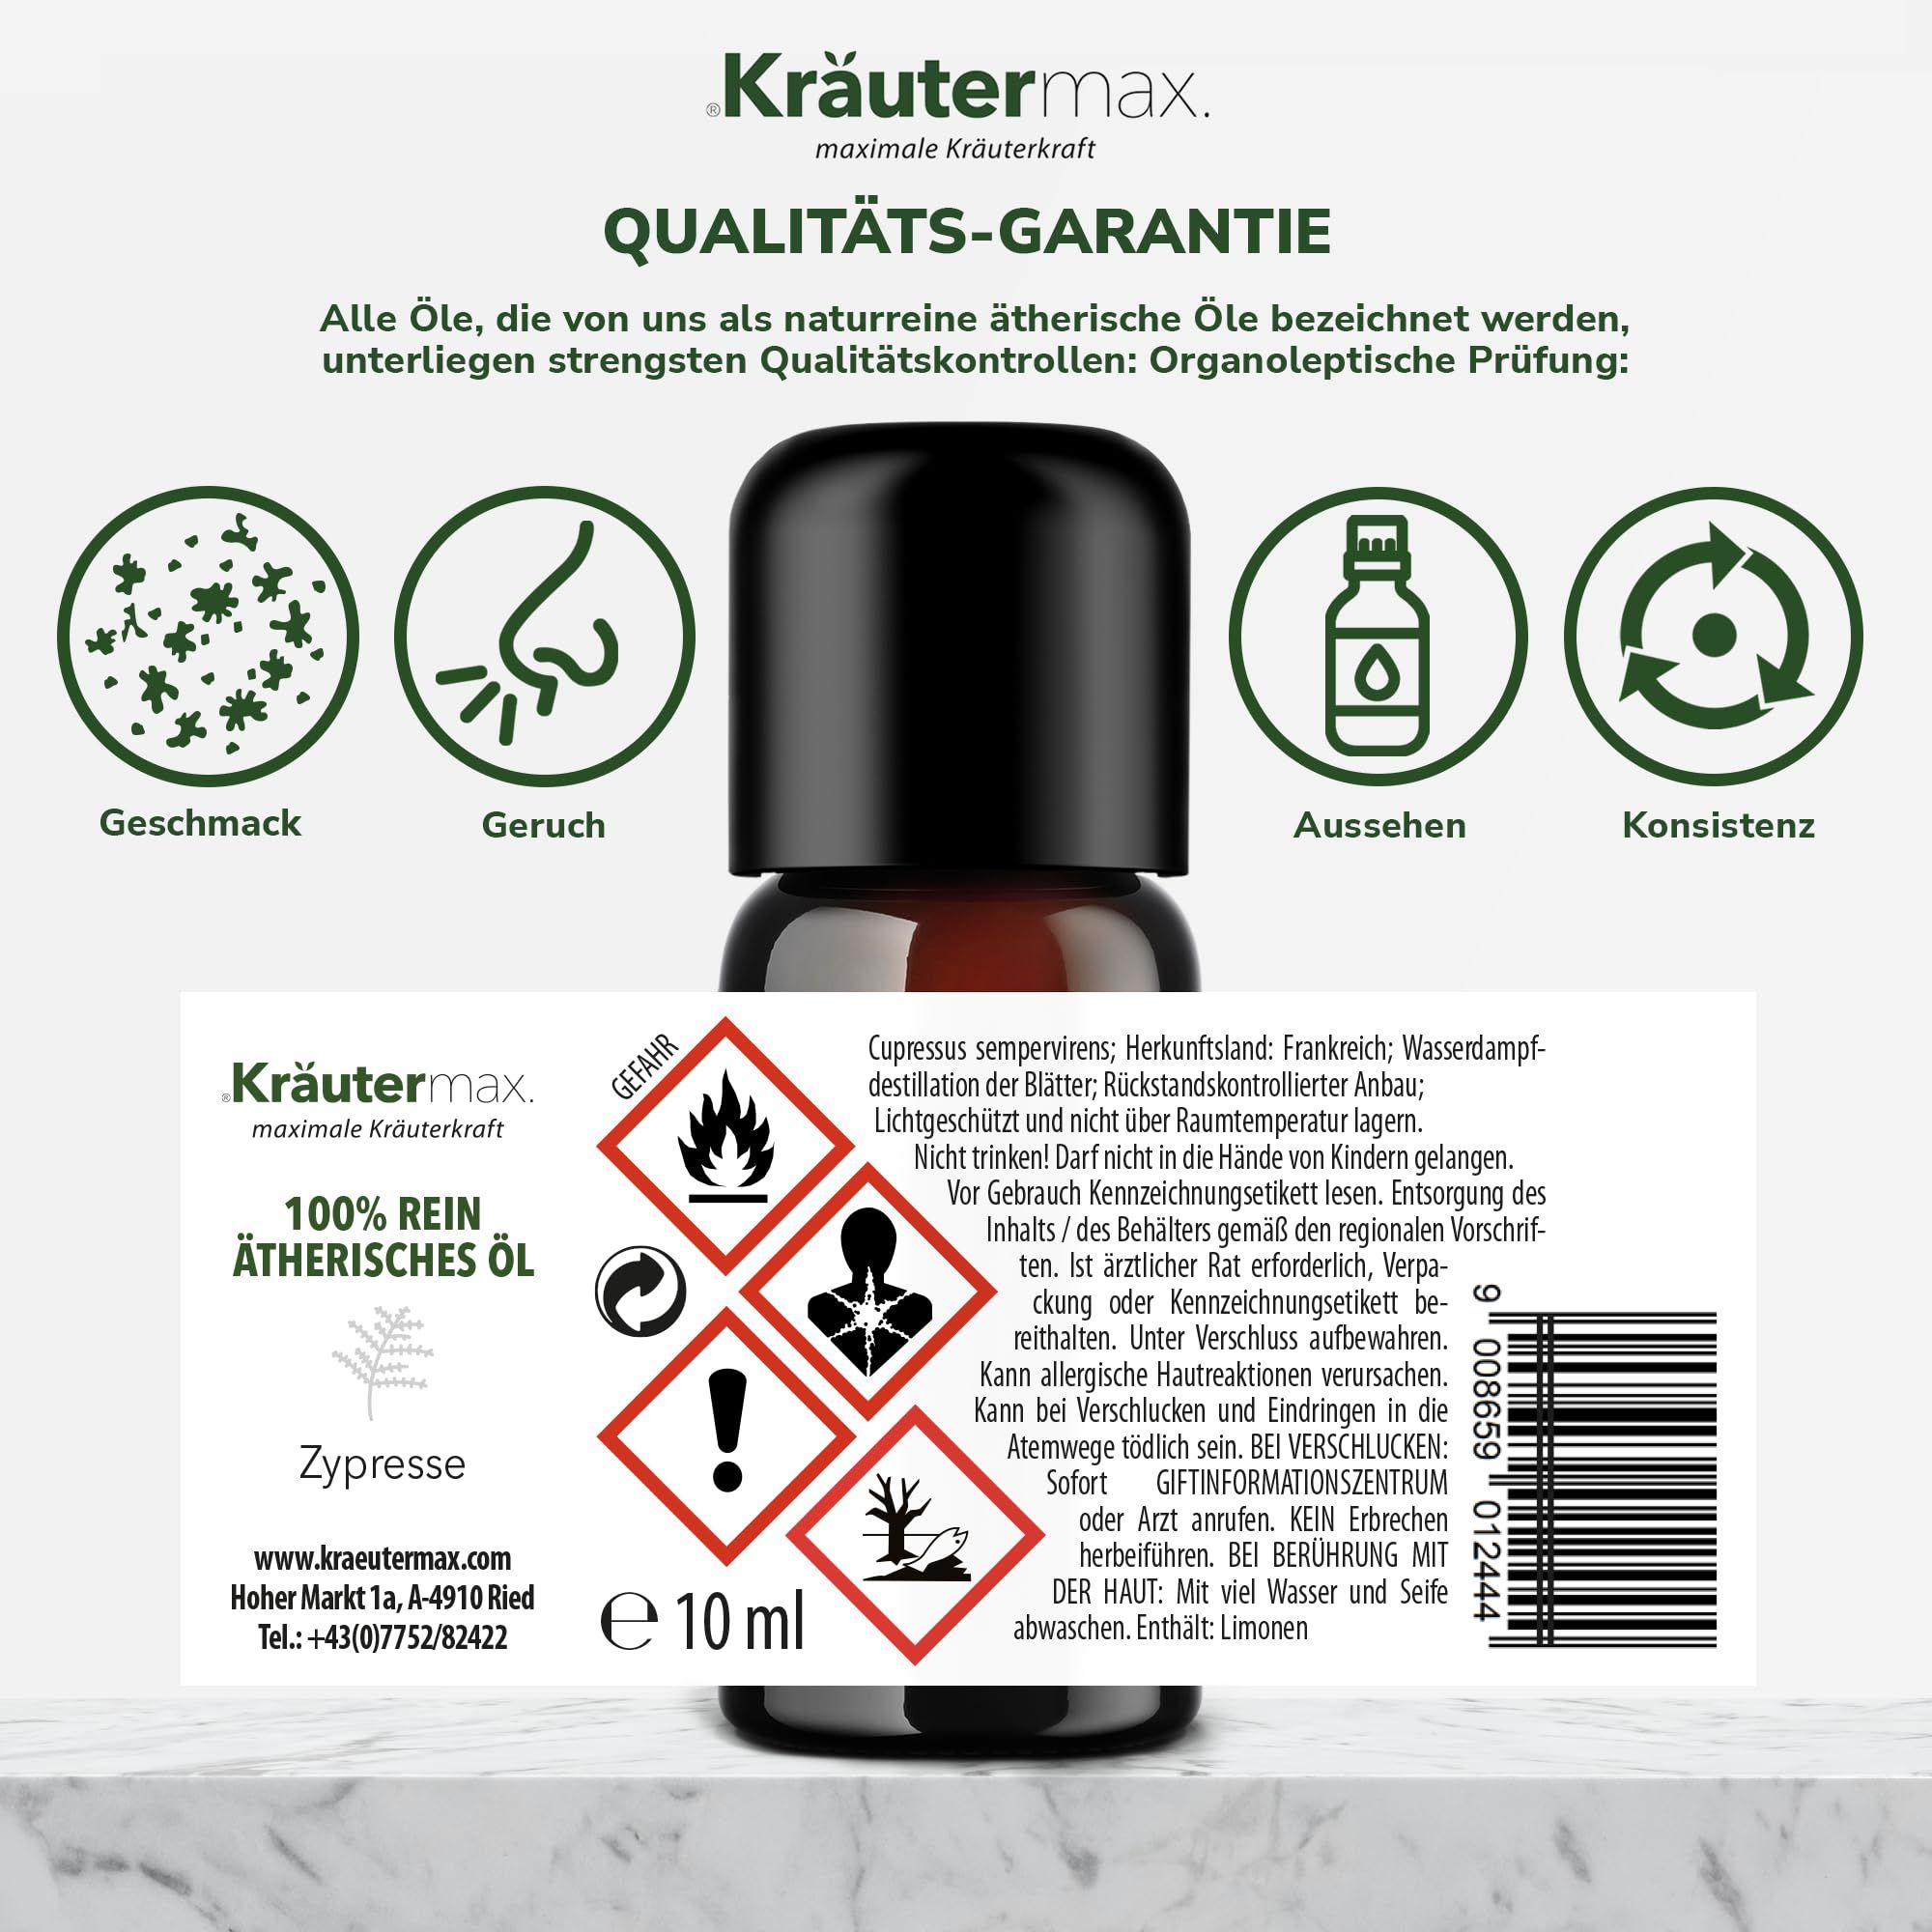 Kräutermax Zypressen Öl